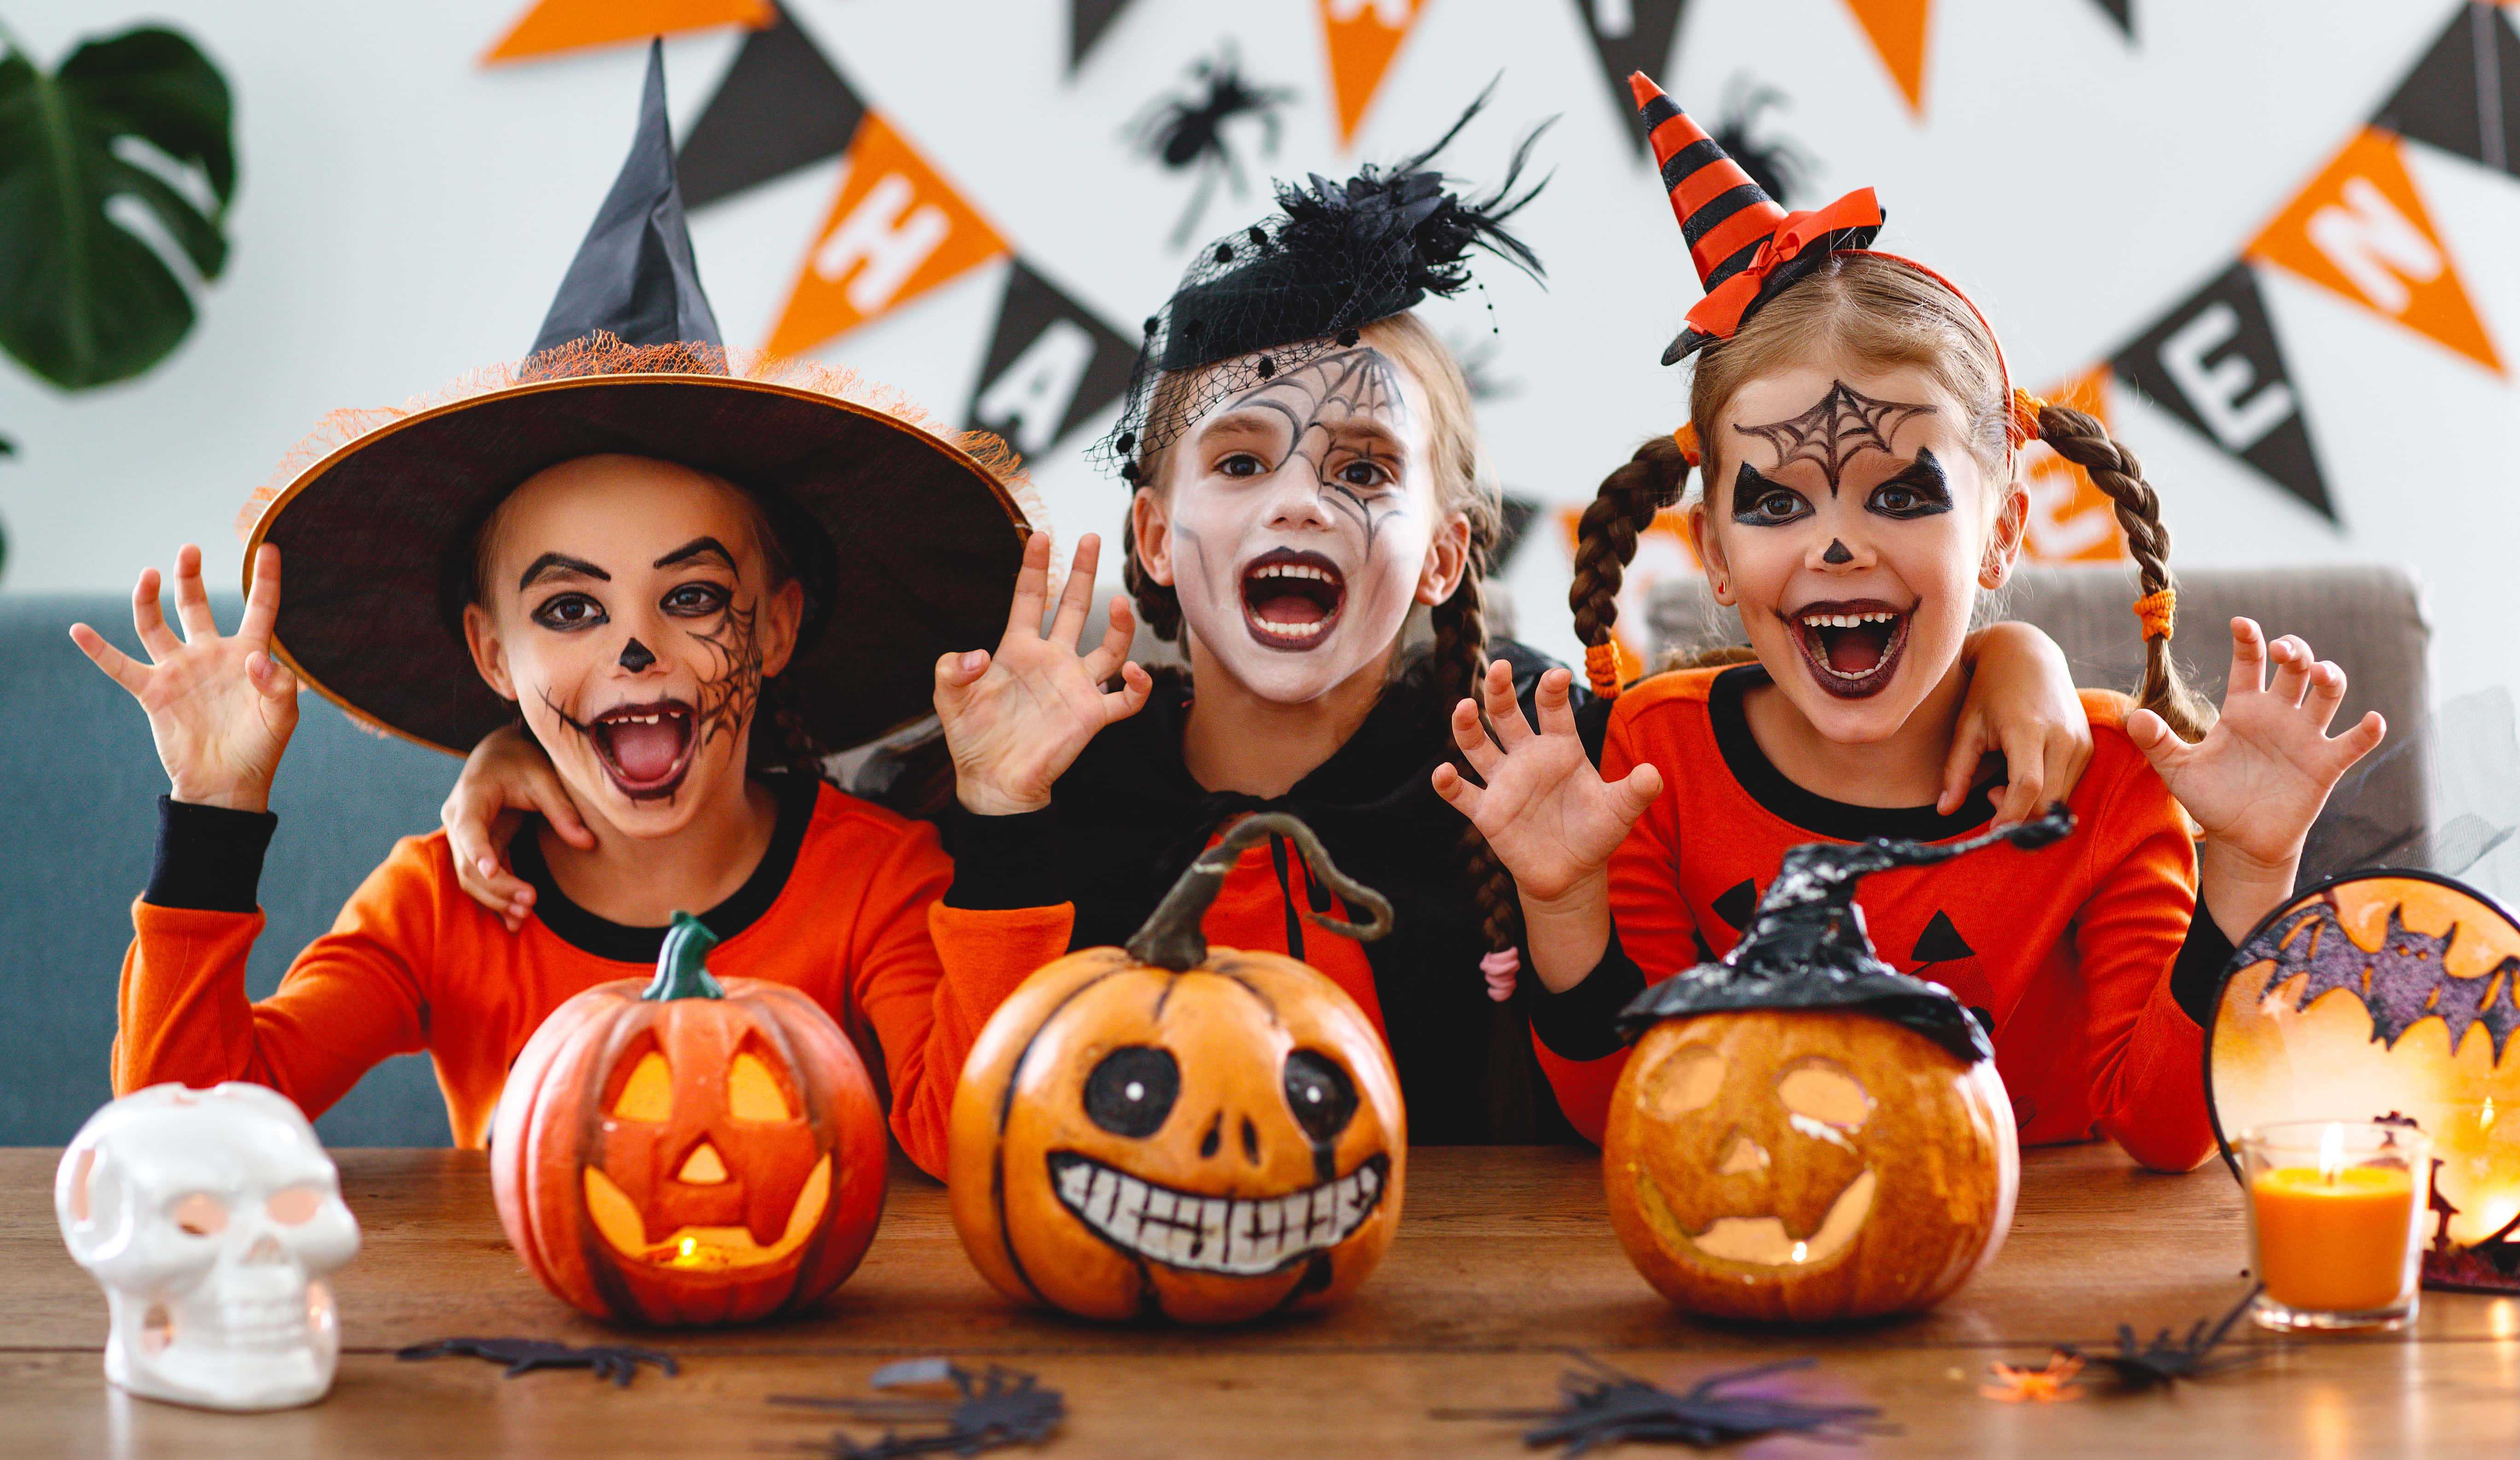 Таинственно и весело: как правильно организовать хэллоуин для детей?